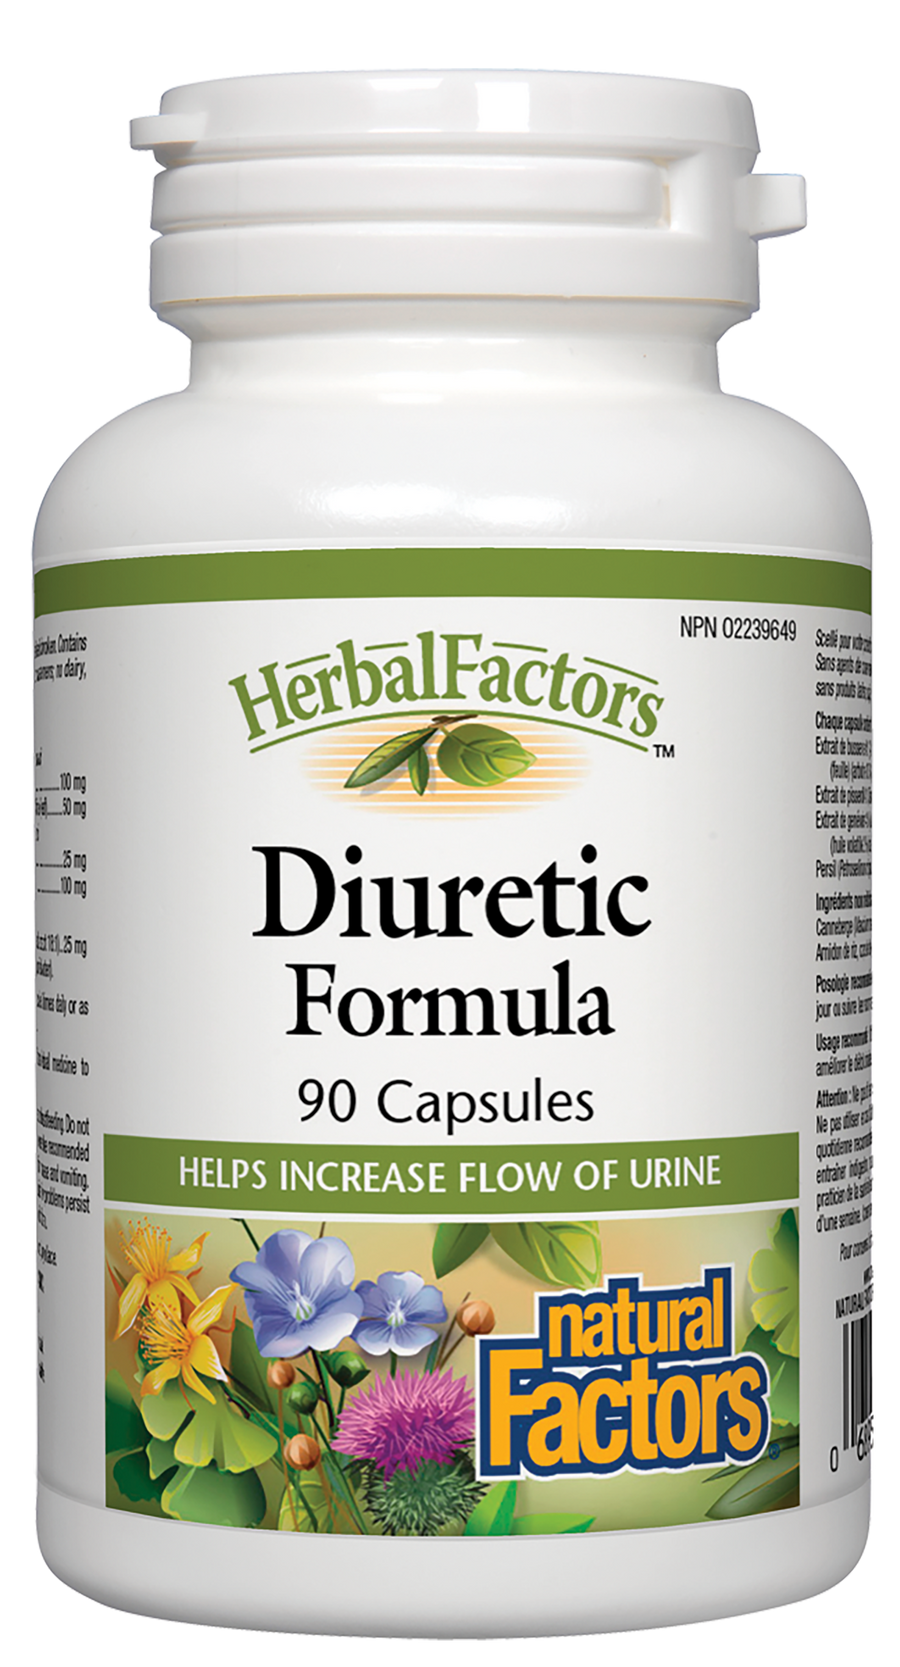 Natural Factors Diuretic Formula, HerbalFactors 90 Capsules